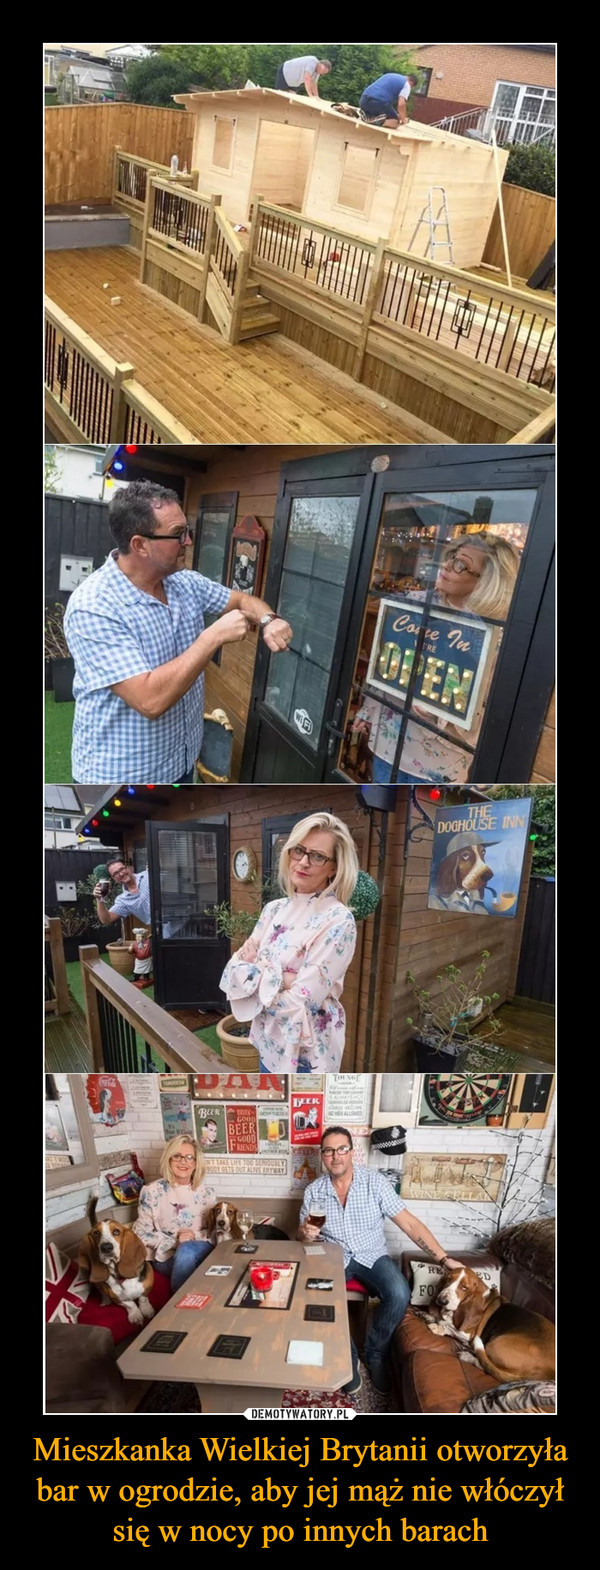 Mieszkanka Wielkiej Brytanii otworzyła bar w ogrodzie, aby jej mąż nie włóczył się w nocy po innych barach